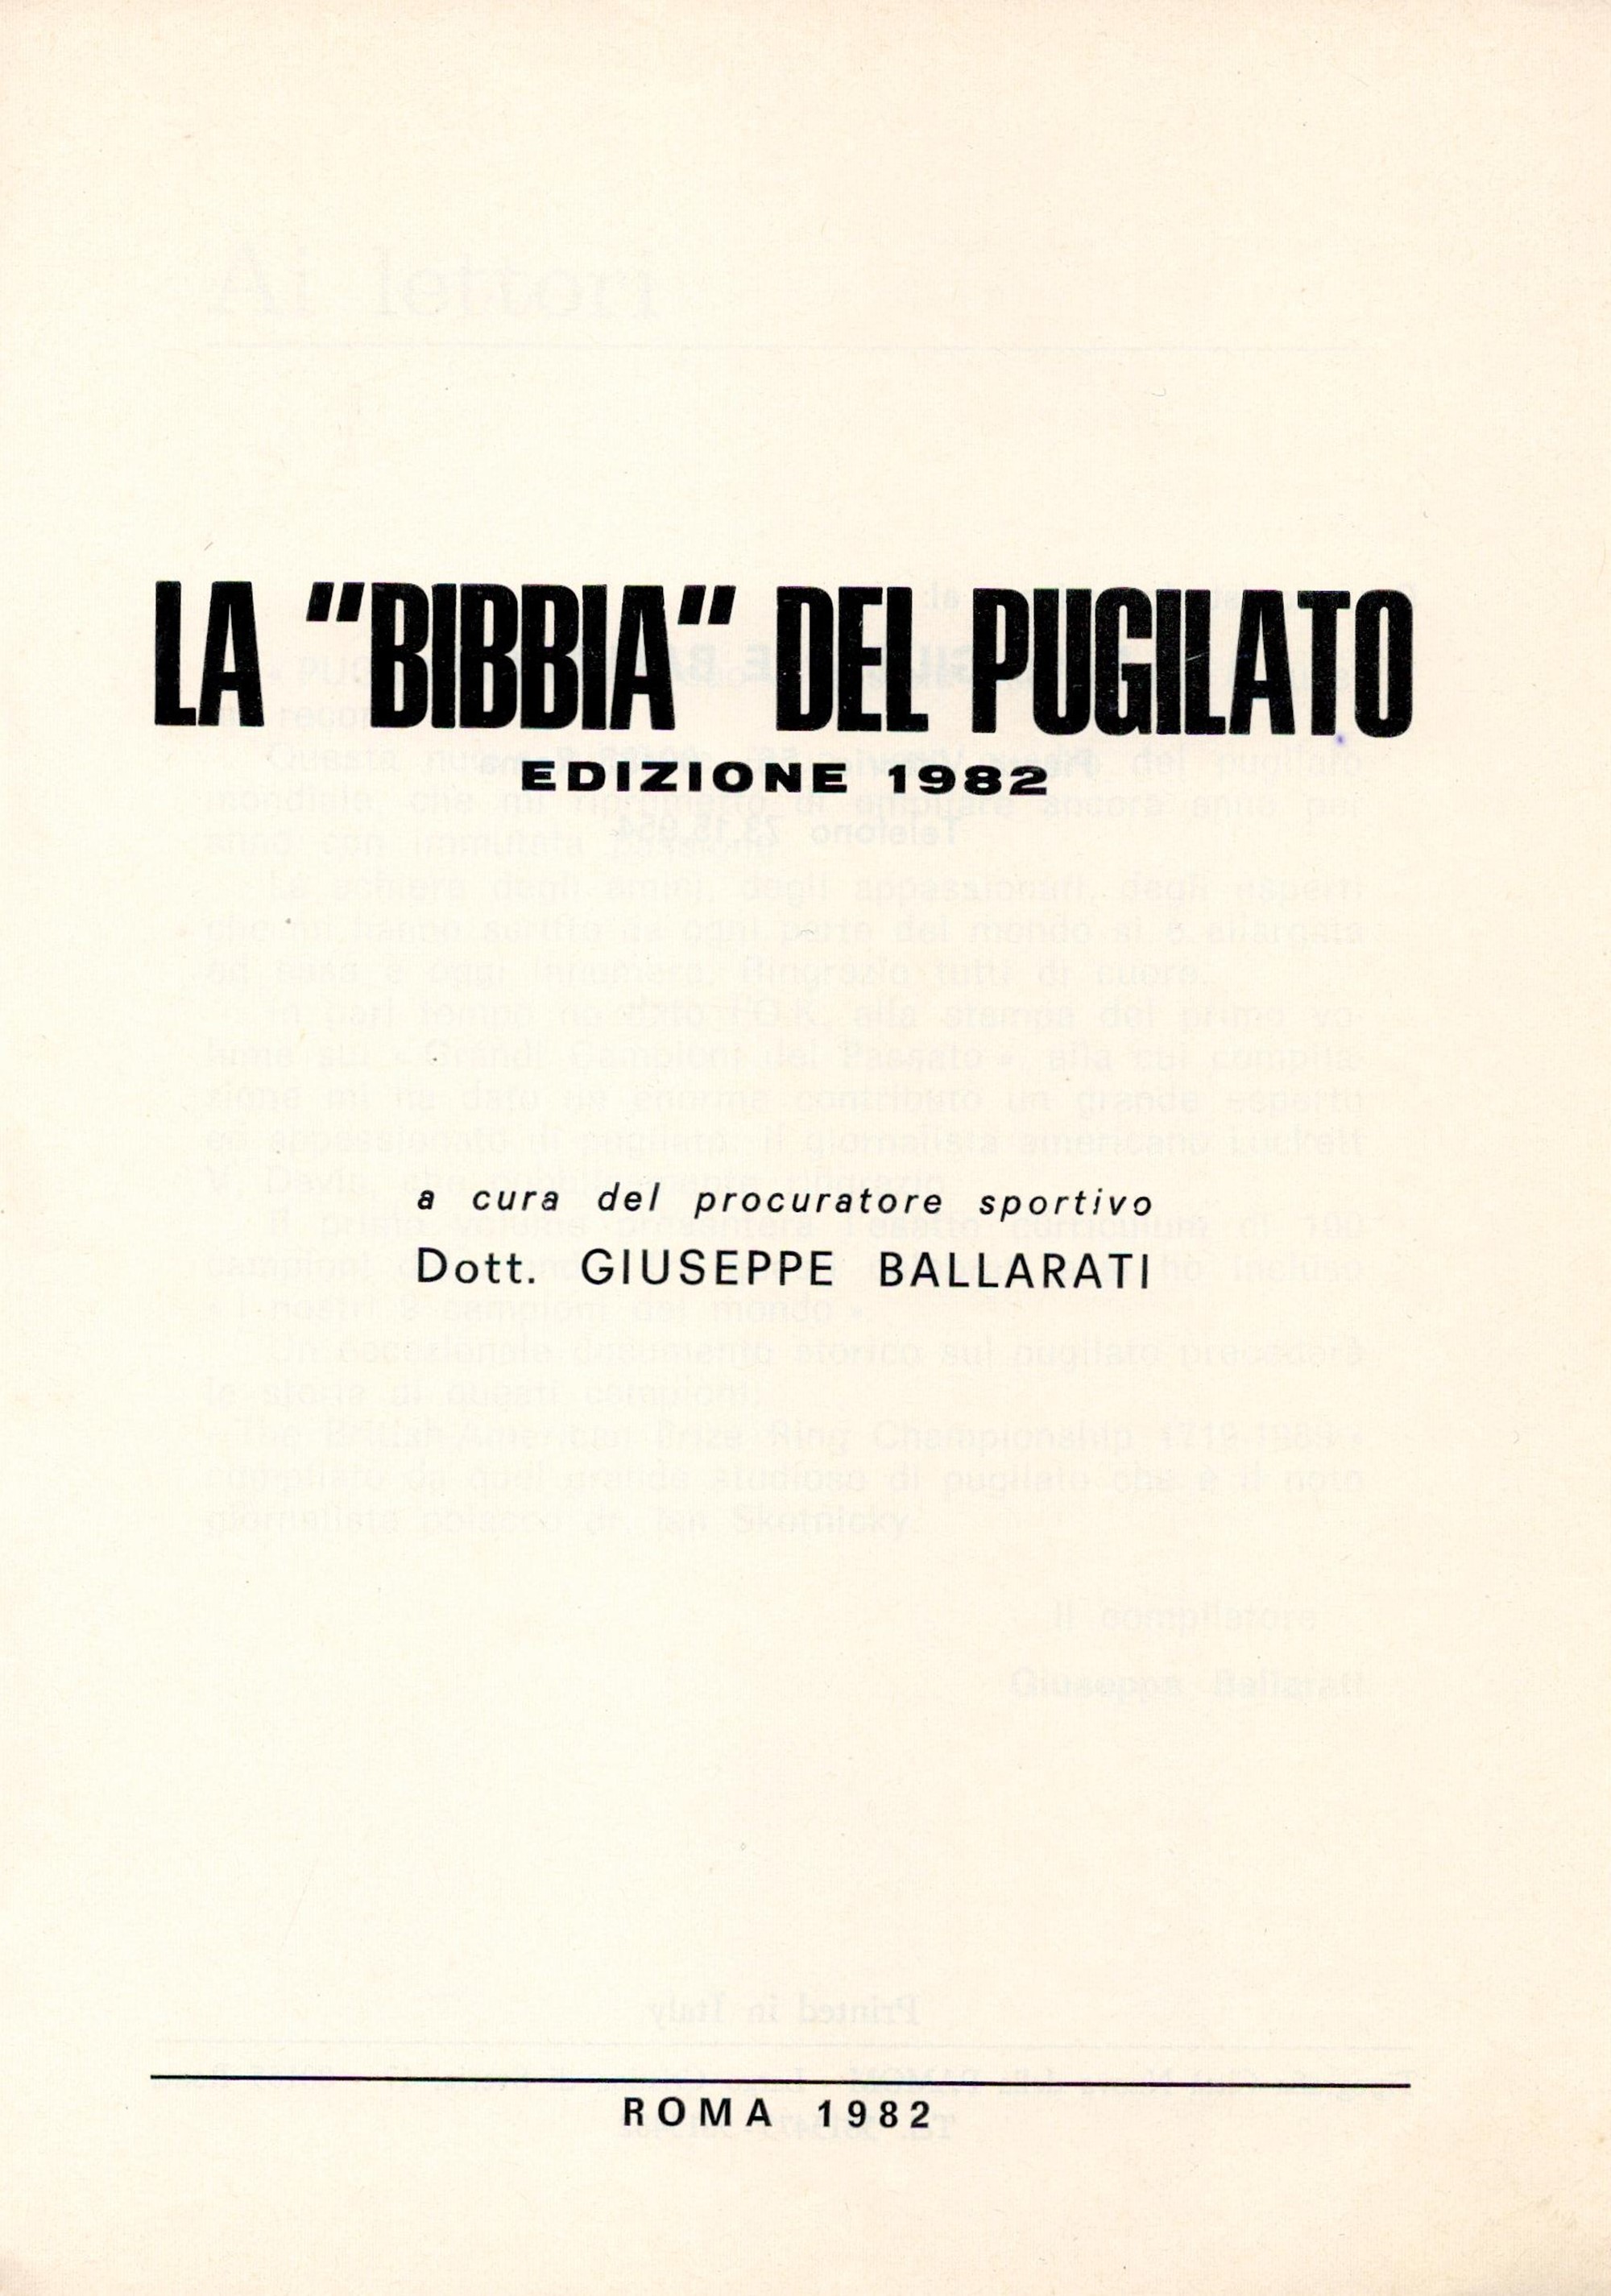 La Bibbia Del Pugilato Edizione 1982 by Giuseppe Ballarati 1982 Softback Book published by da - Image 2 of 3